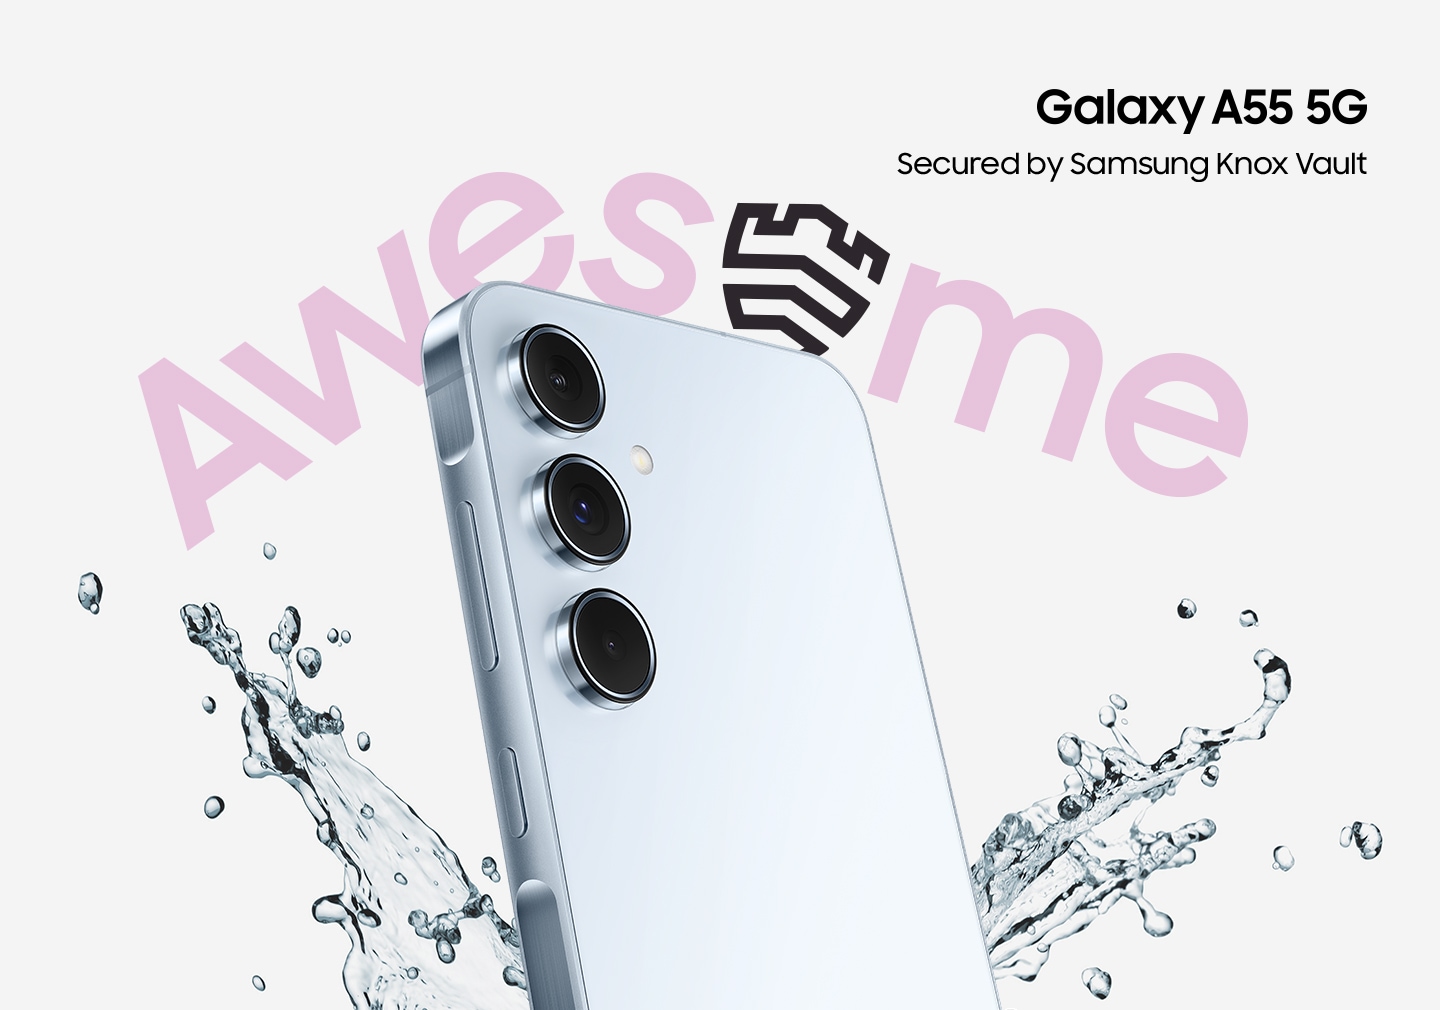 ภาพของ Galaxy A55 5G ที่เอียงทำมุมพร้อมกับมีน้ำกระเซ็นอยู่รอบ ๆ และมีข้อความ 'AWESOME' อยู่ โลโก้ Galaxy A55 5G มีข้อความเขียนไว้ว่า Secured by Samsung Knox Vault